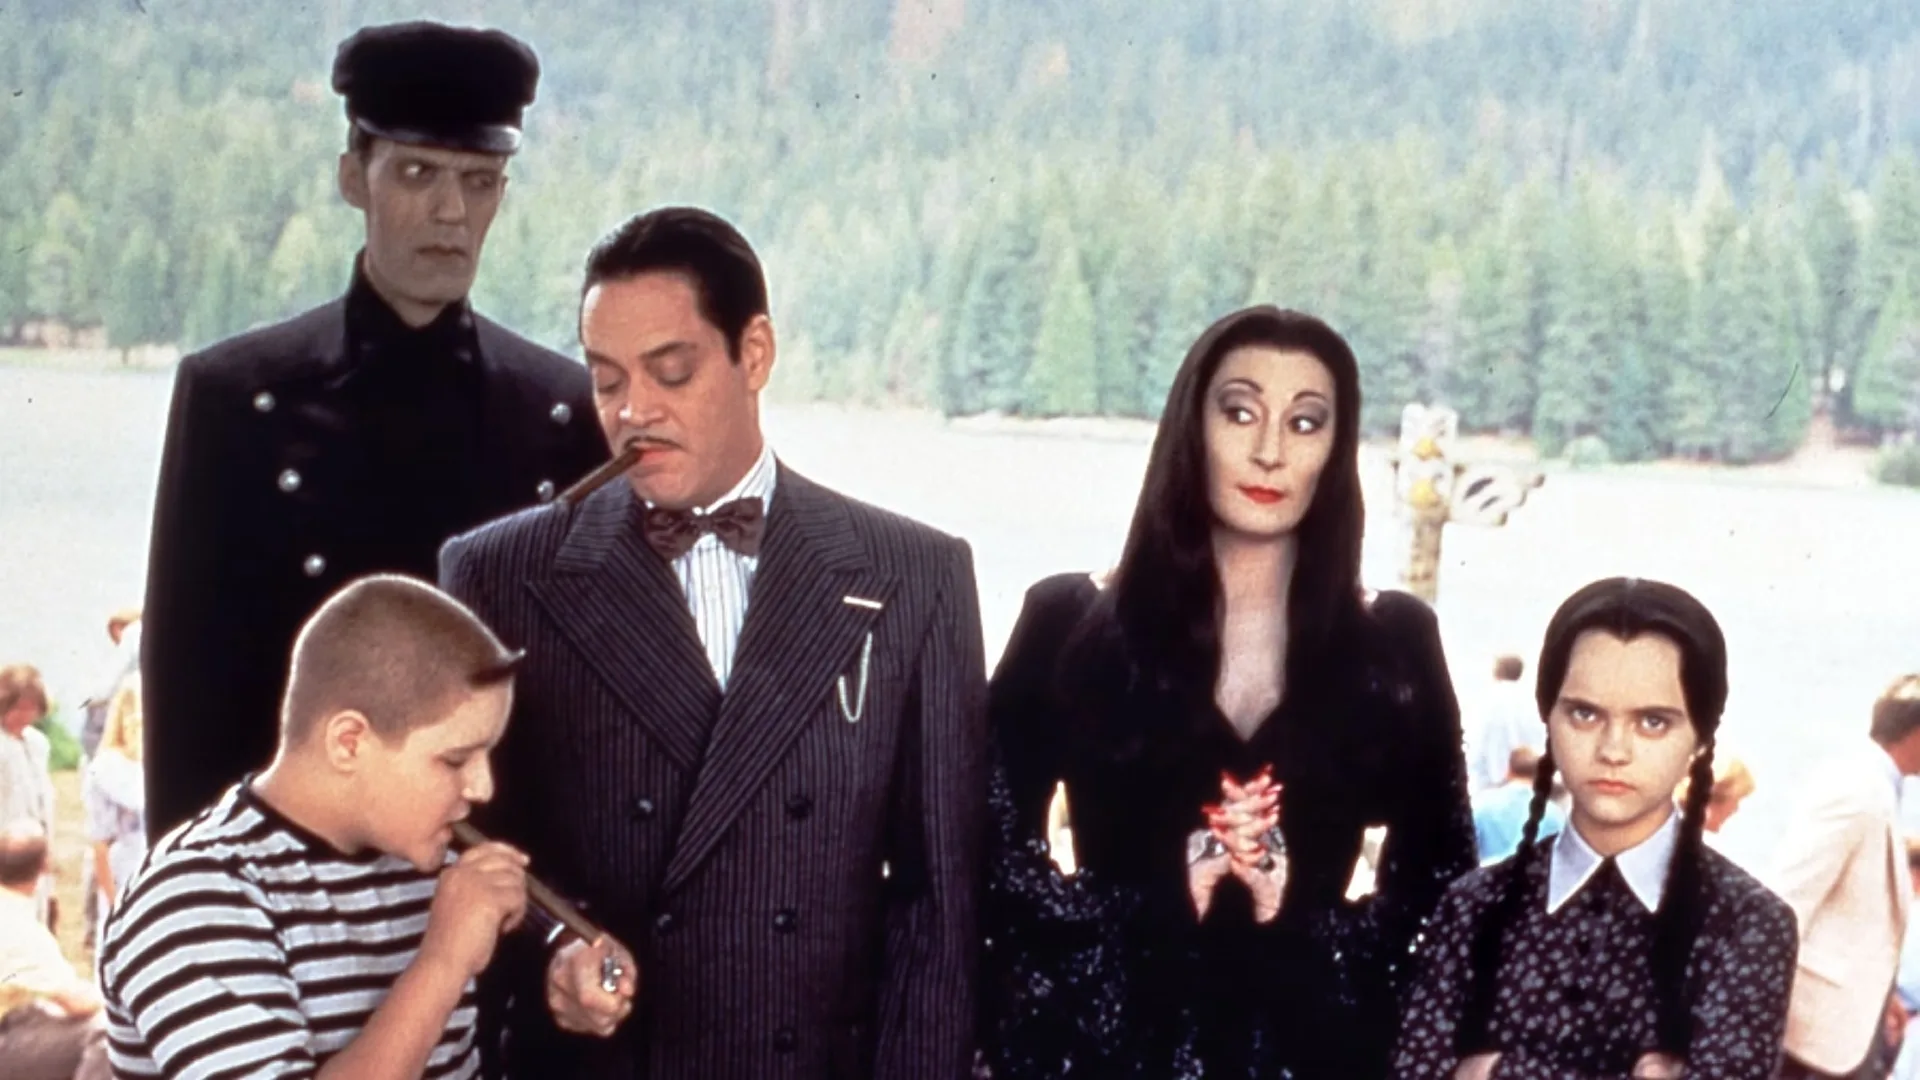 Familias del cine, familia Addams